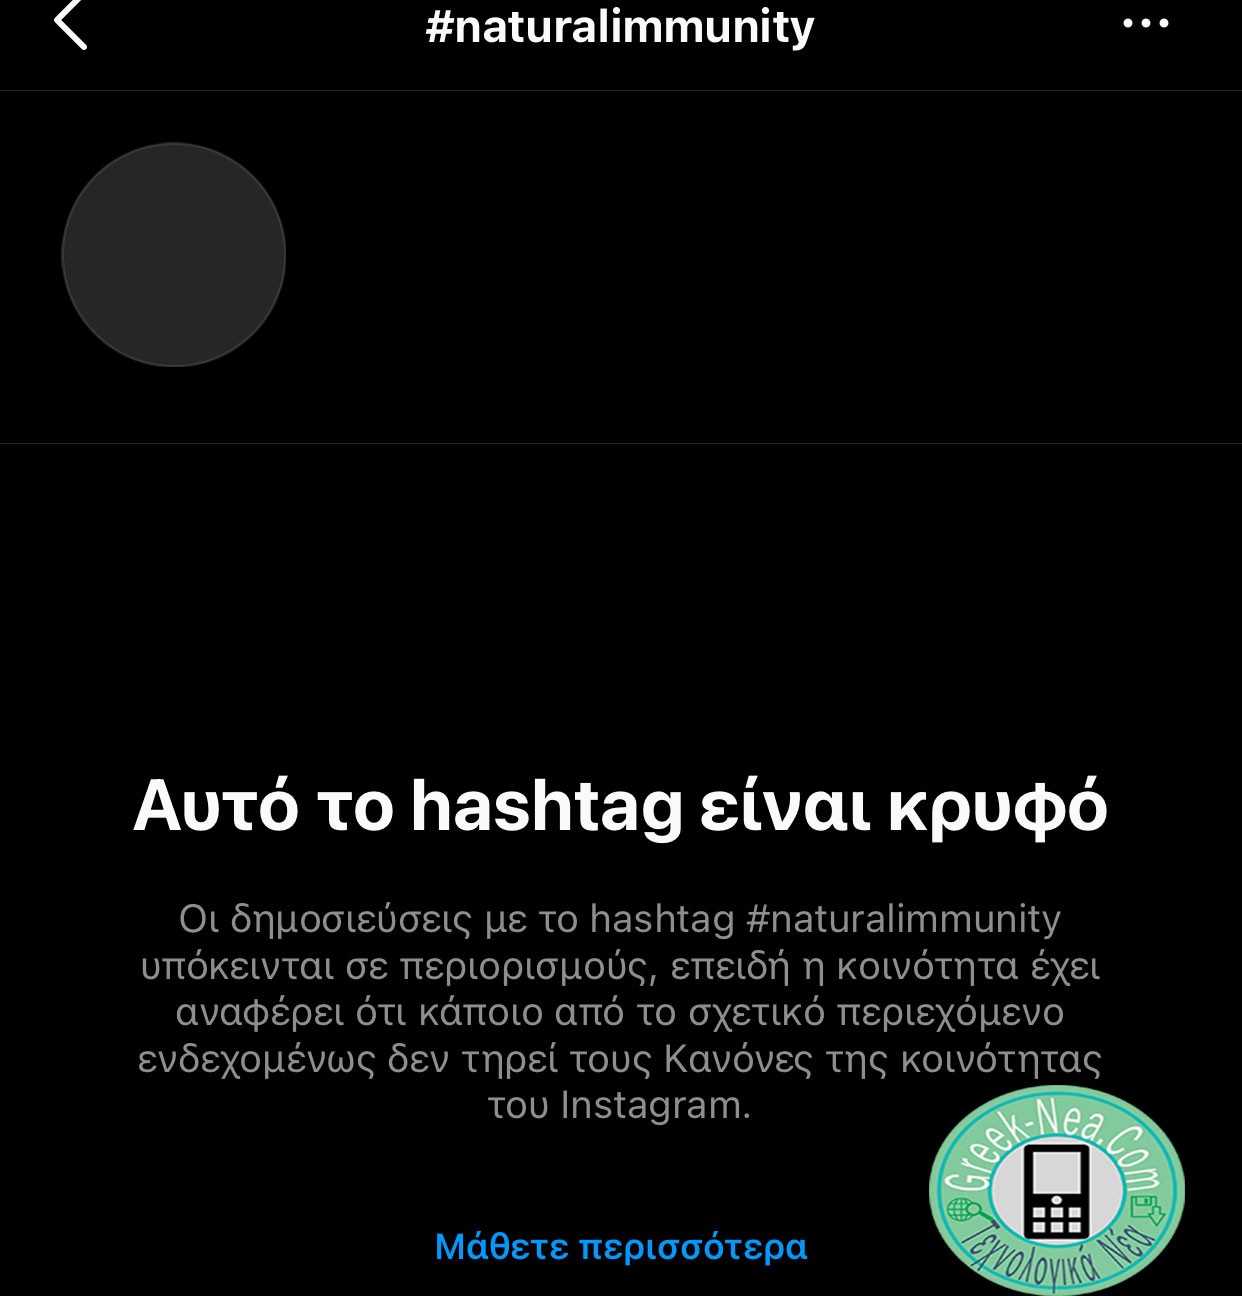 Το Instagram αποκλείει τα αποτελέσματα για το hashtag matural immunity